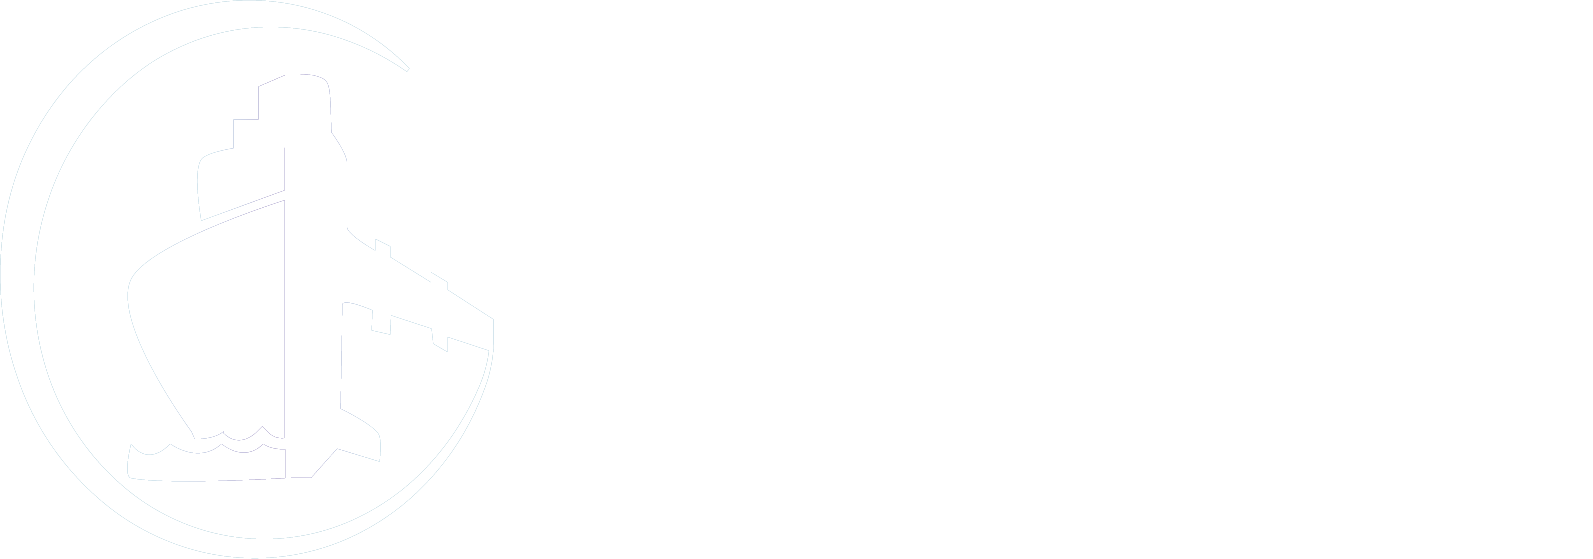 GRIMALDI CARGO CANARIAS